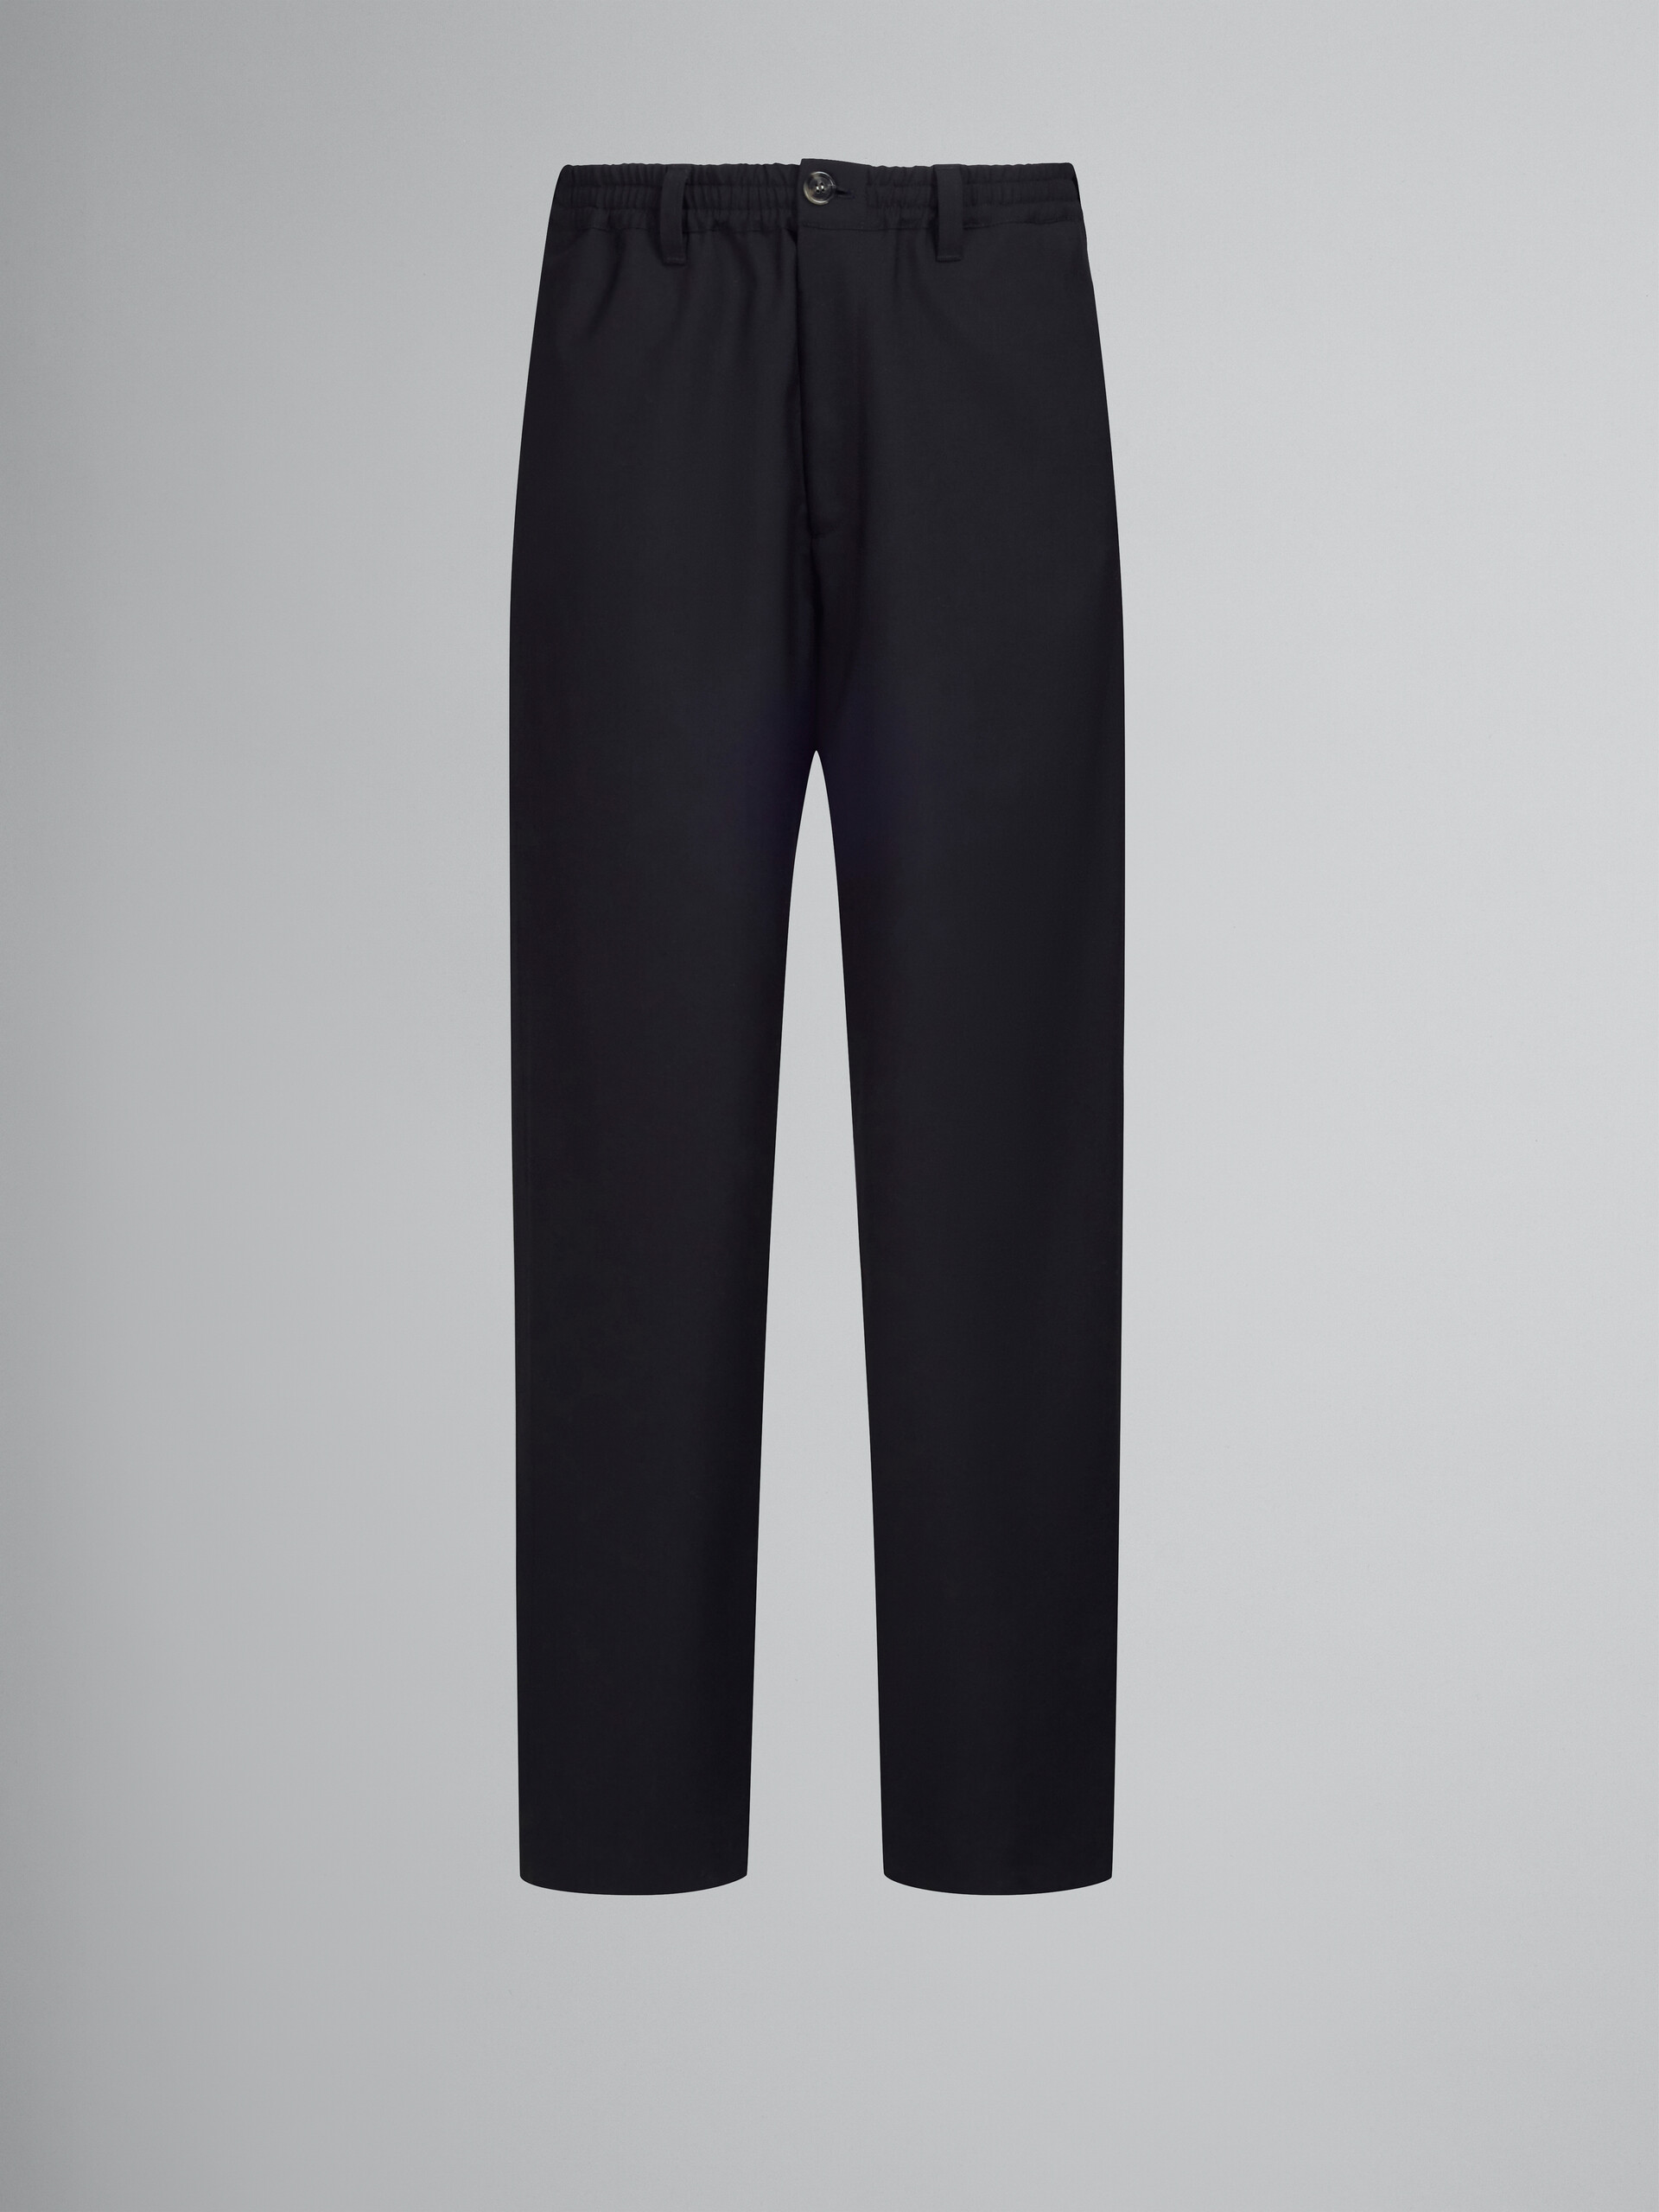 Pantalon en laine tropicale noire - Pantalons - Image 1